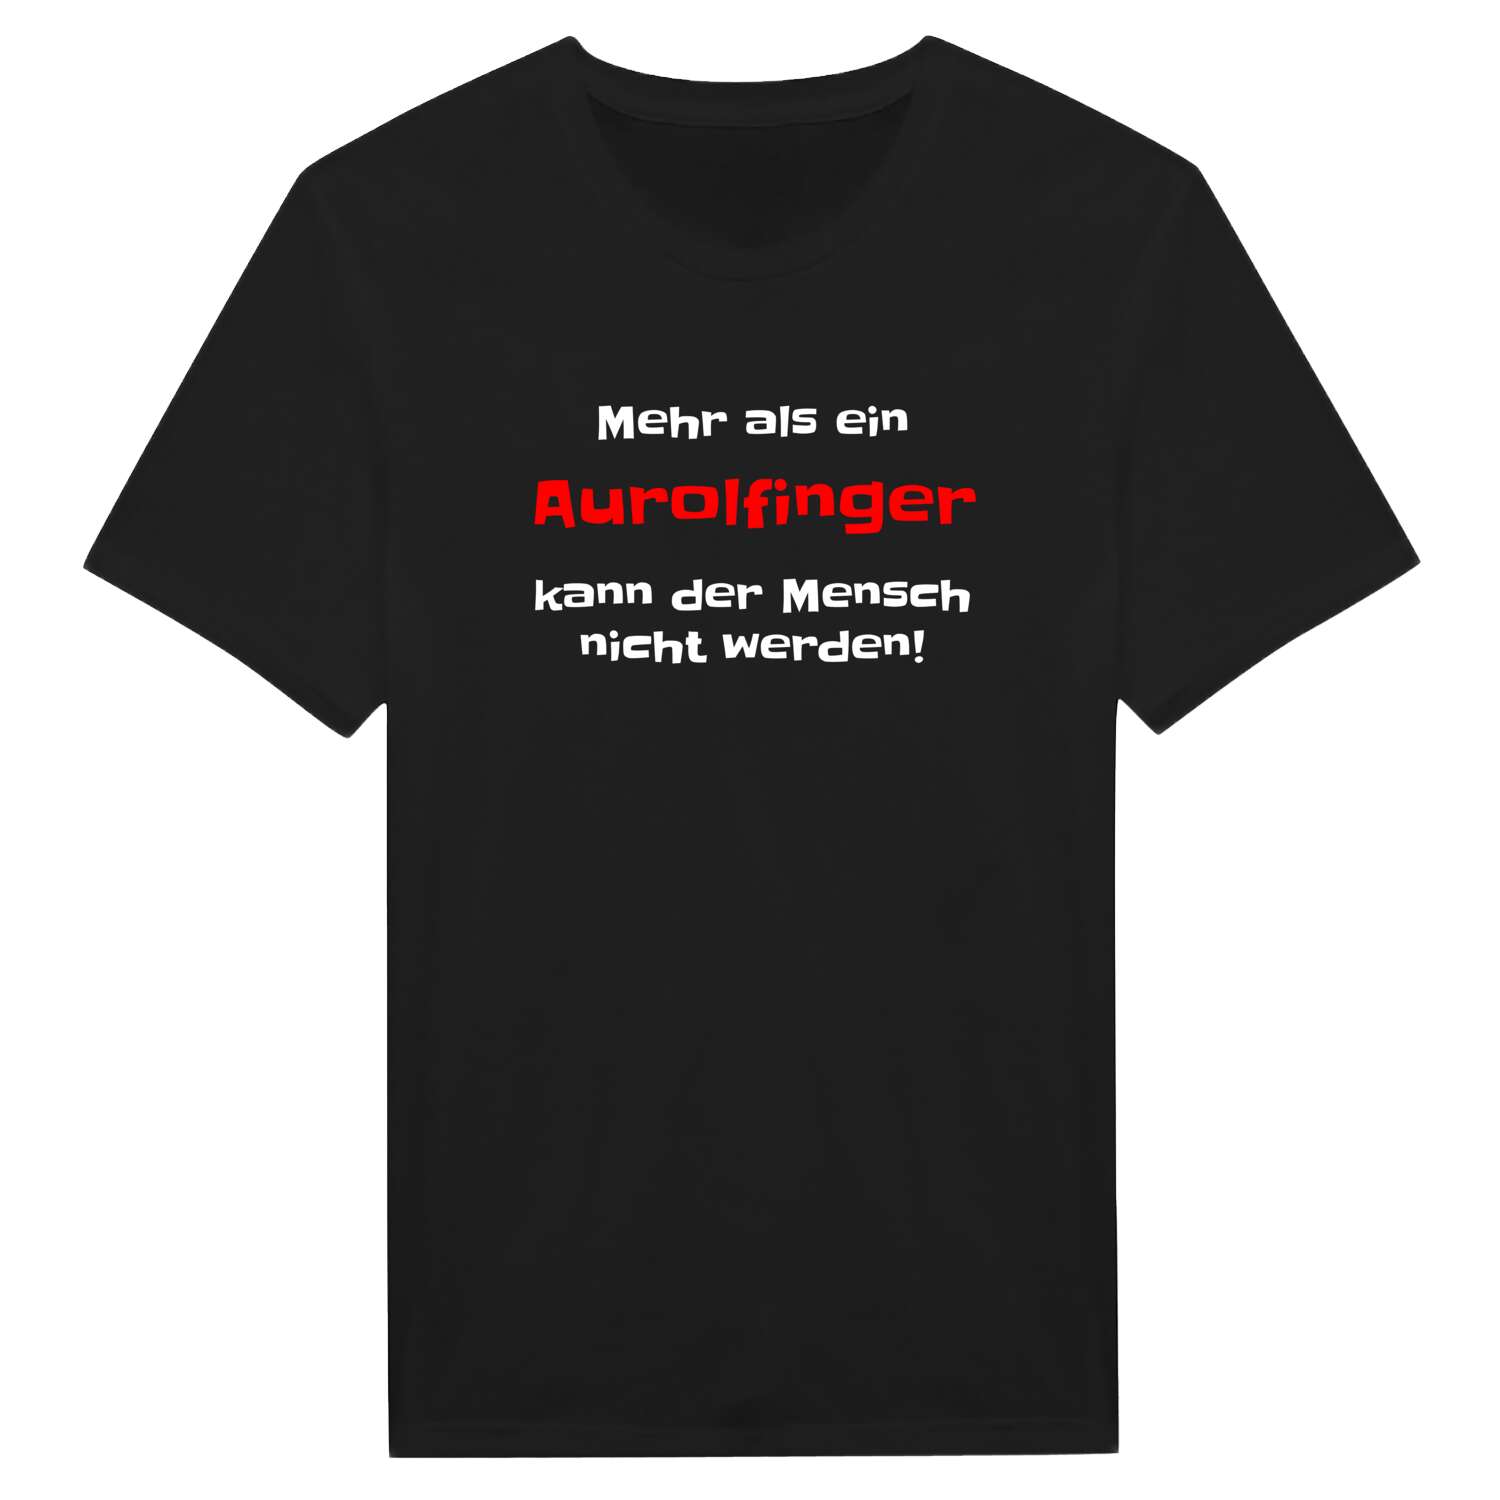 Aurolfing T-Shirt »Mehr als ein«